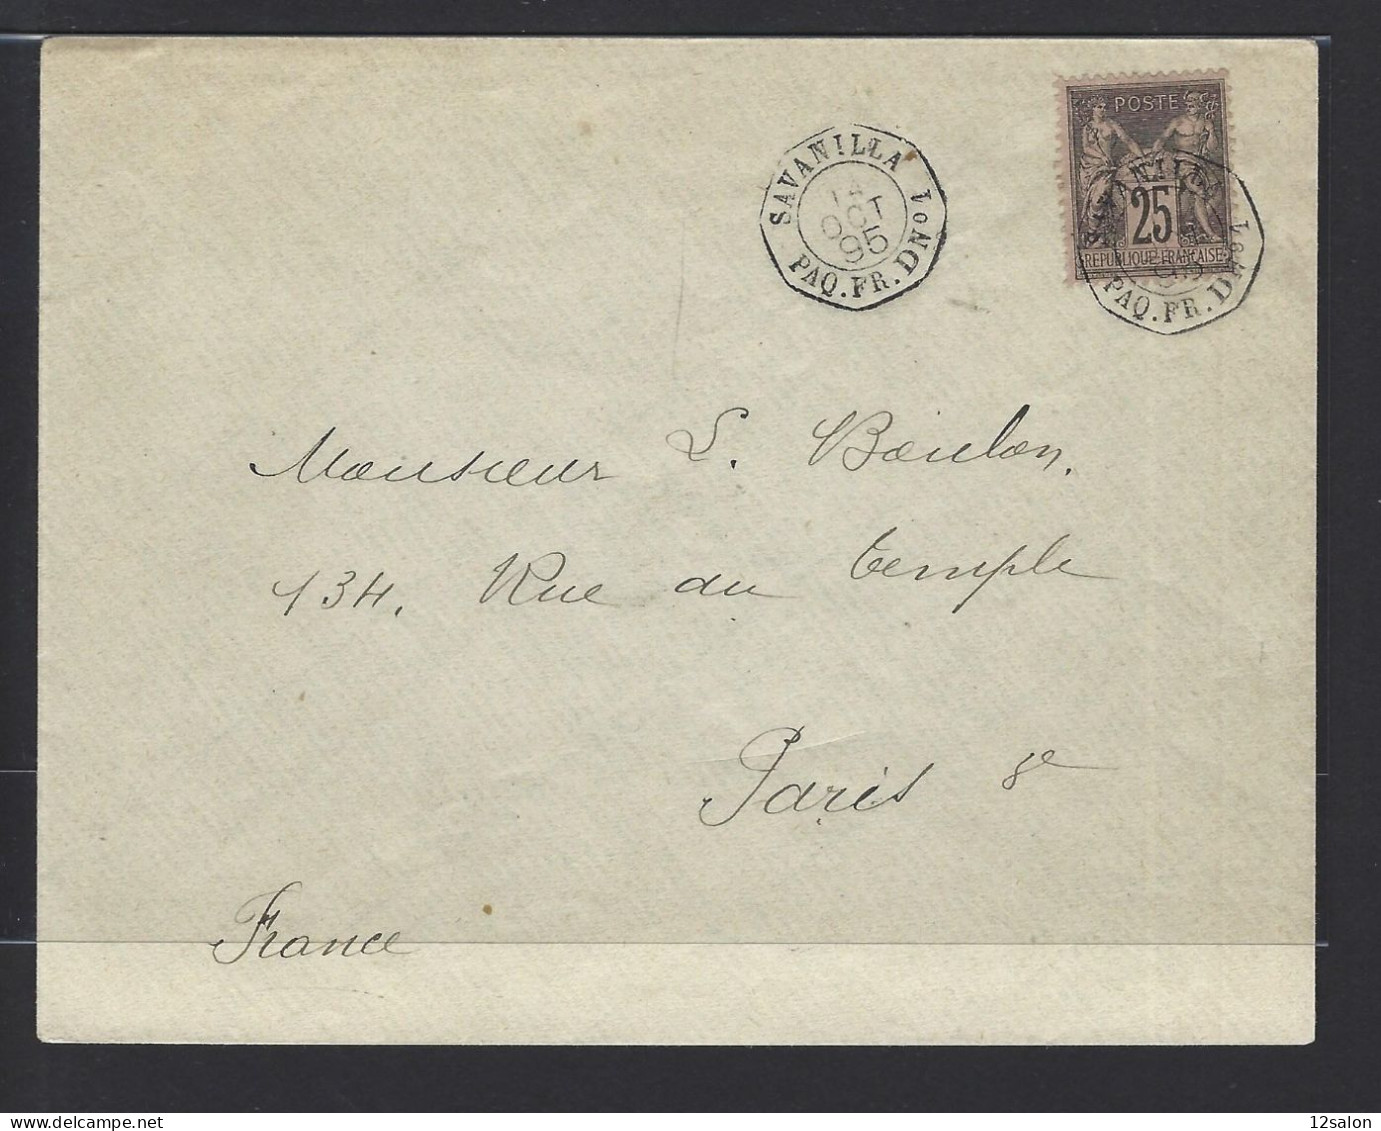 MARITIME SAGE N°97 OBL CAD Octogone Sur La Pointe "Savanilla Paq FR D N°1" (1895) Répété à Côté (Salles N°1505 - Ind 20) - Poste Maritime